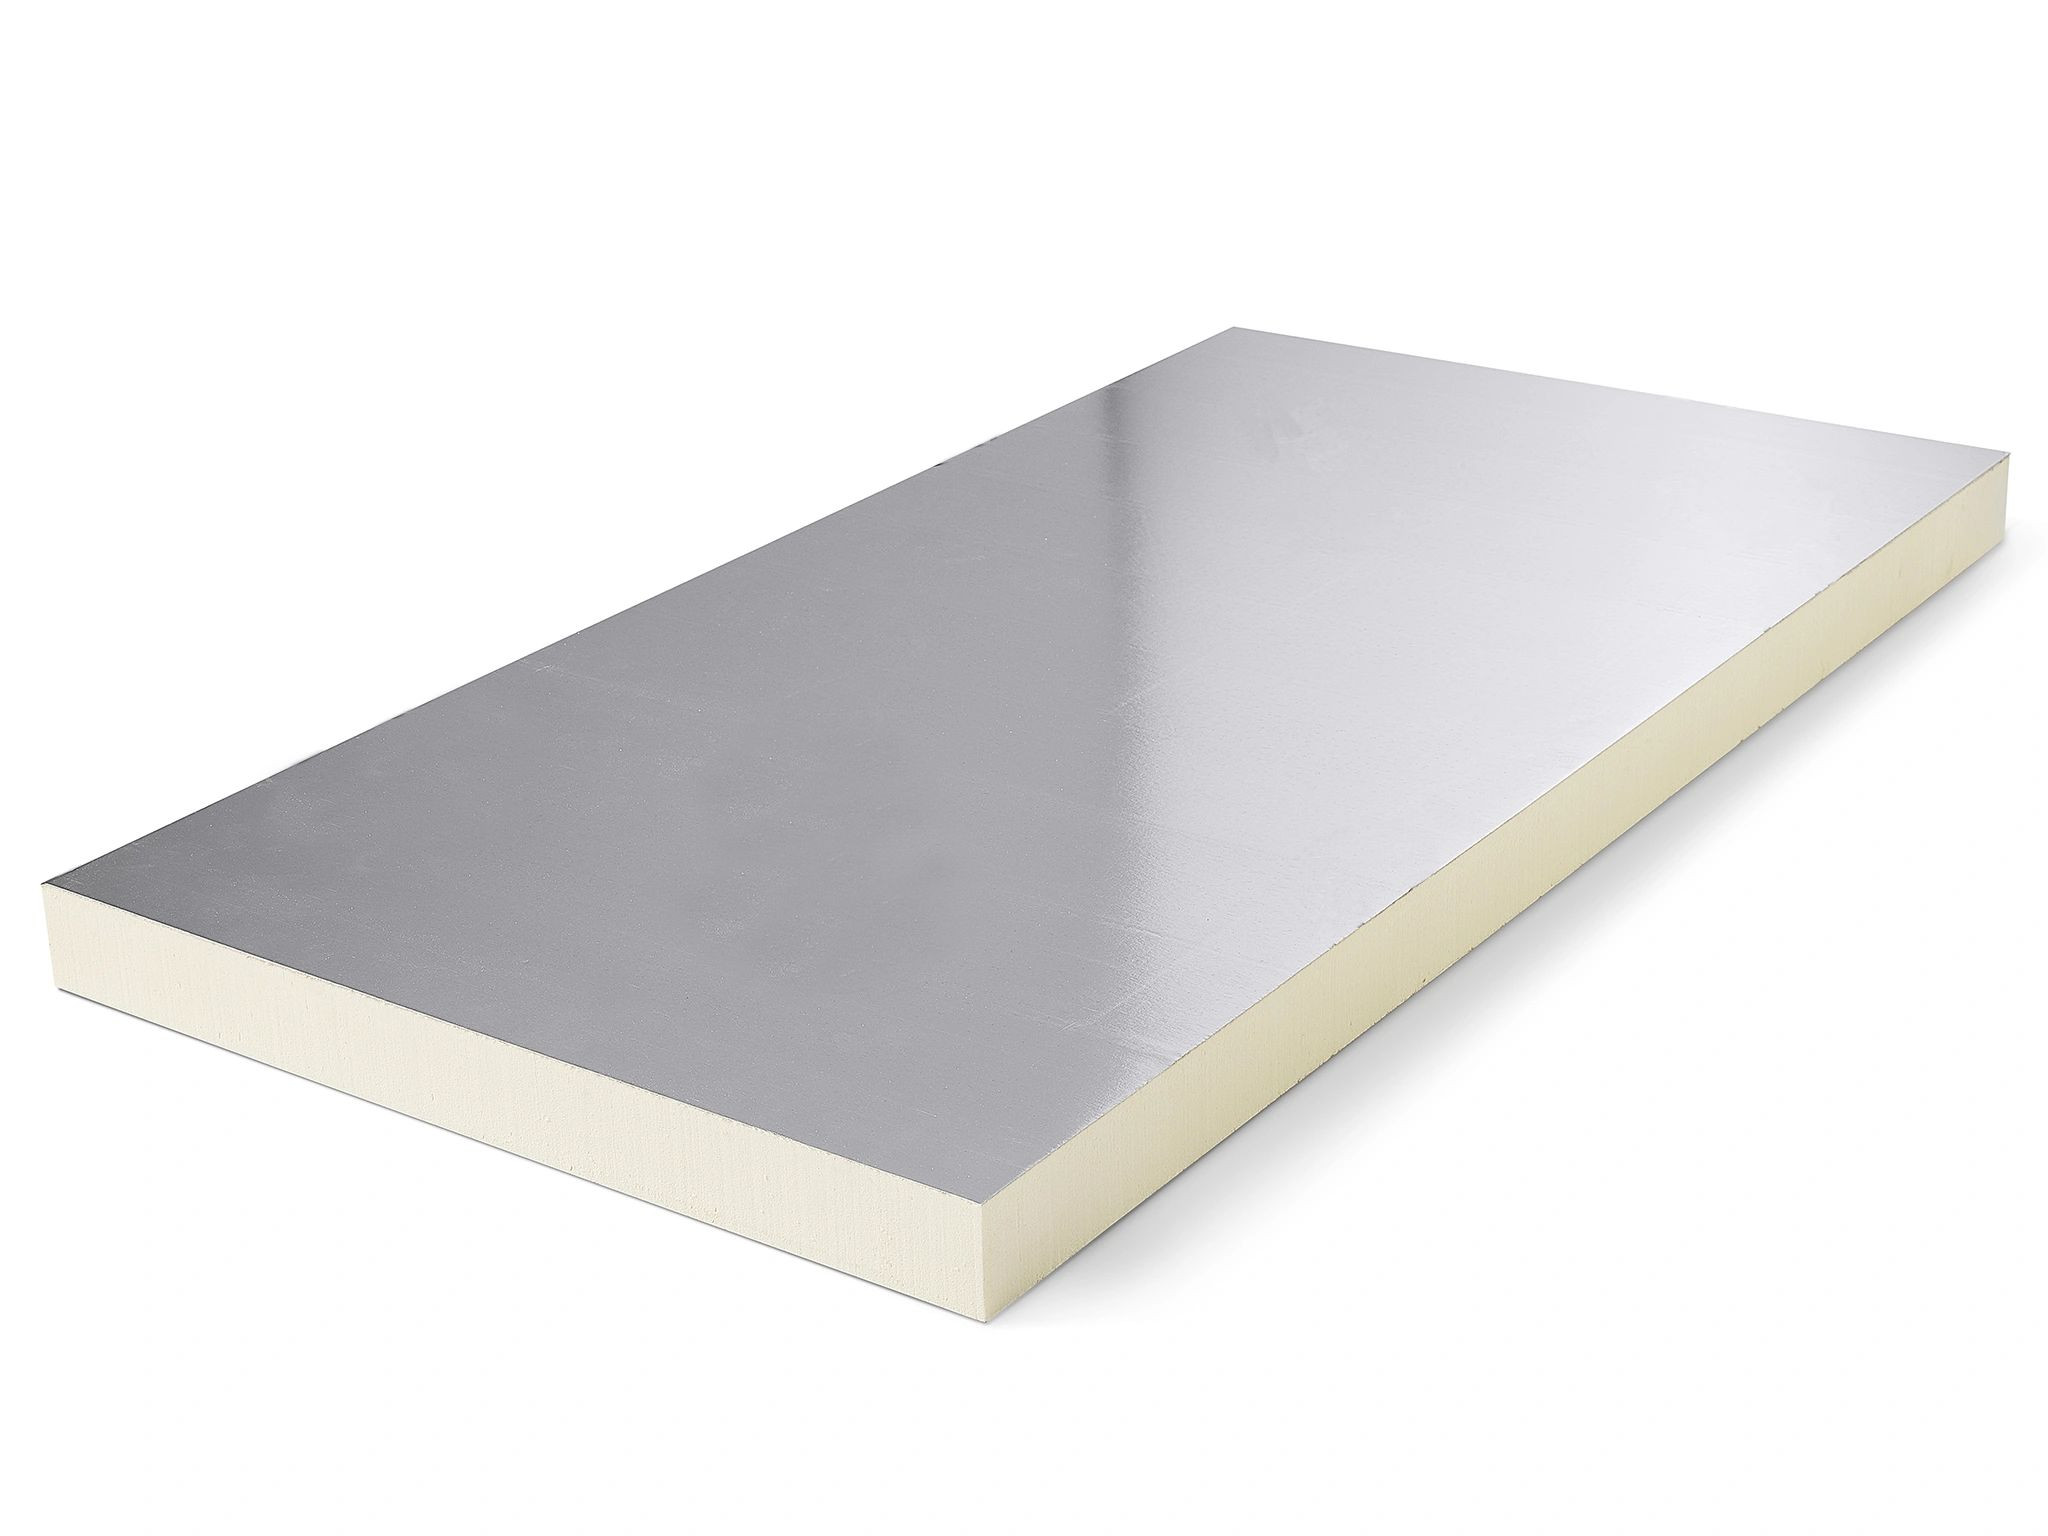 InSuS PIR 2-zijdig Aluminium 1200x600x50mm Rd:2.27 10pl/pak (=7,20 m²)